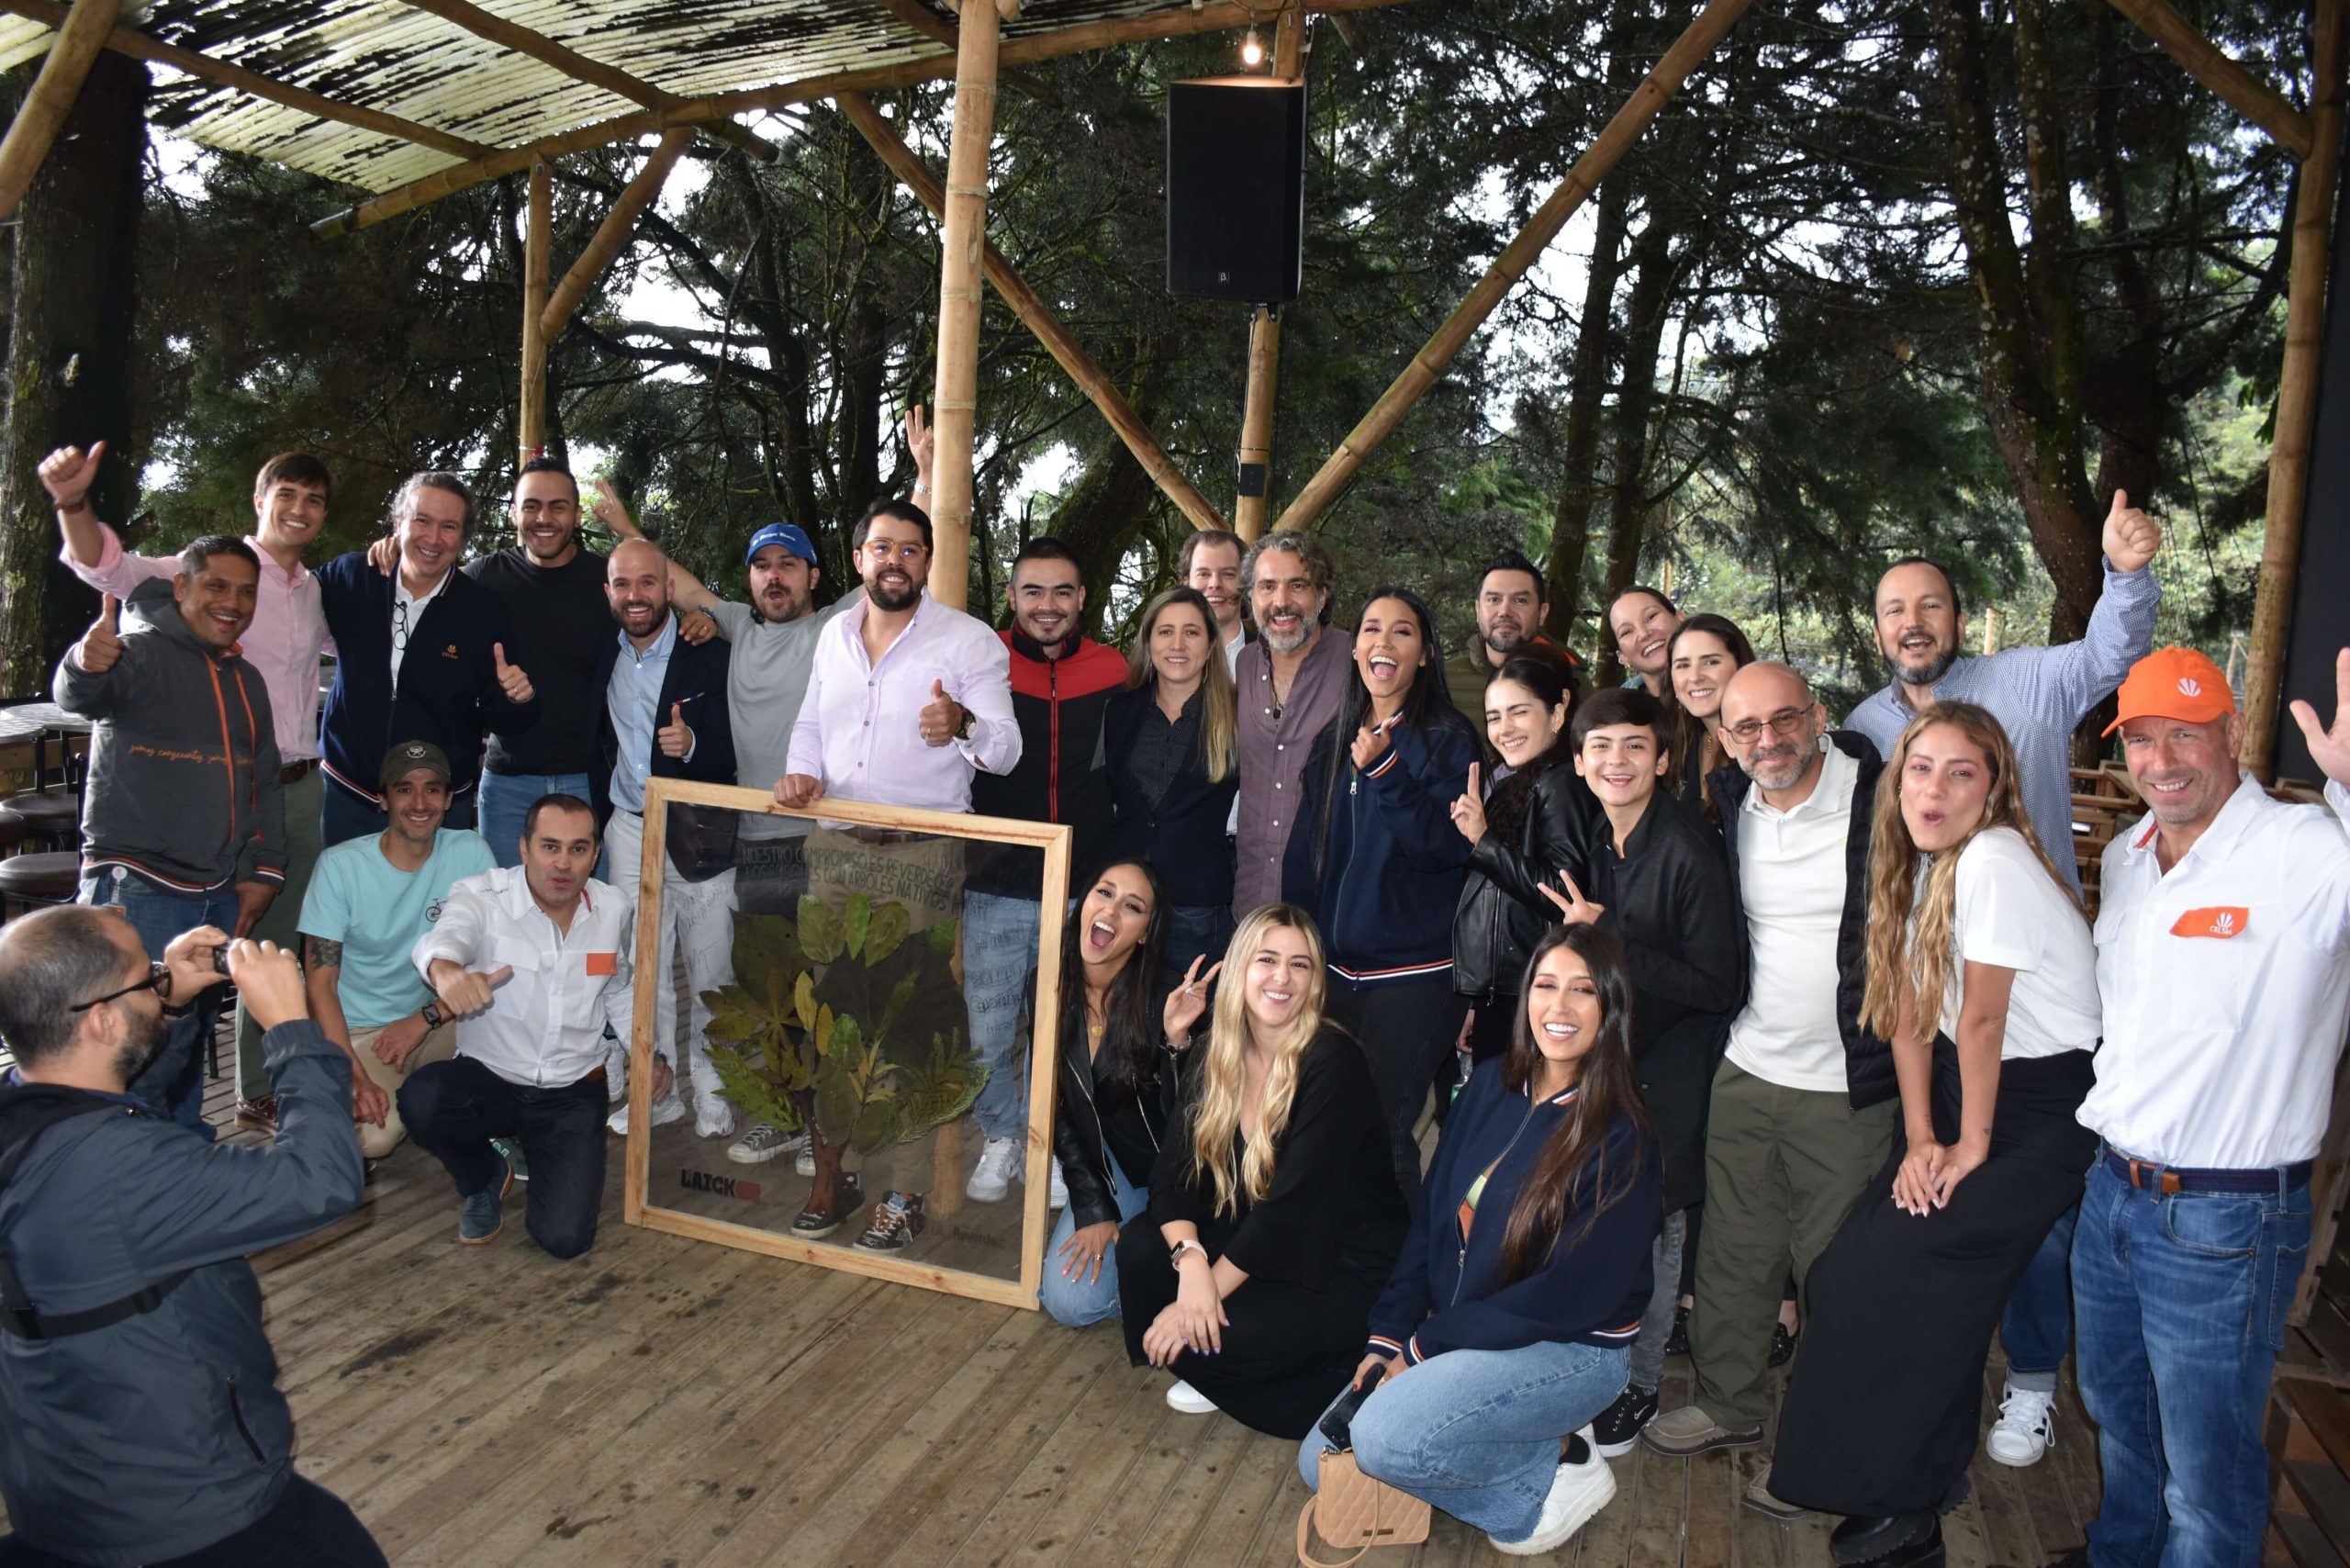 Influenciadores del gremio Laick y la fundación ReverdeC de Celsia se unen para motivar la siembra masiva de árboles y compensar la huella de carbono